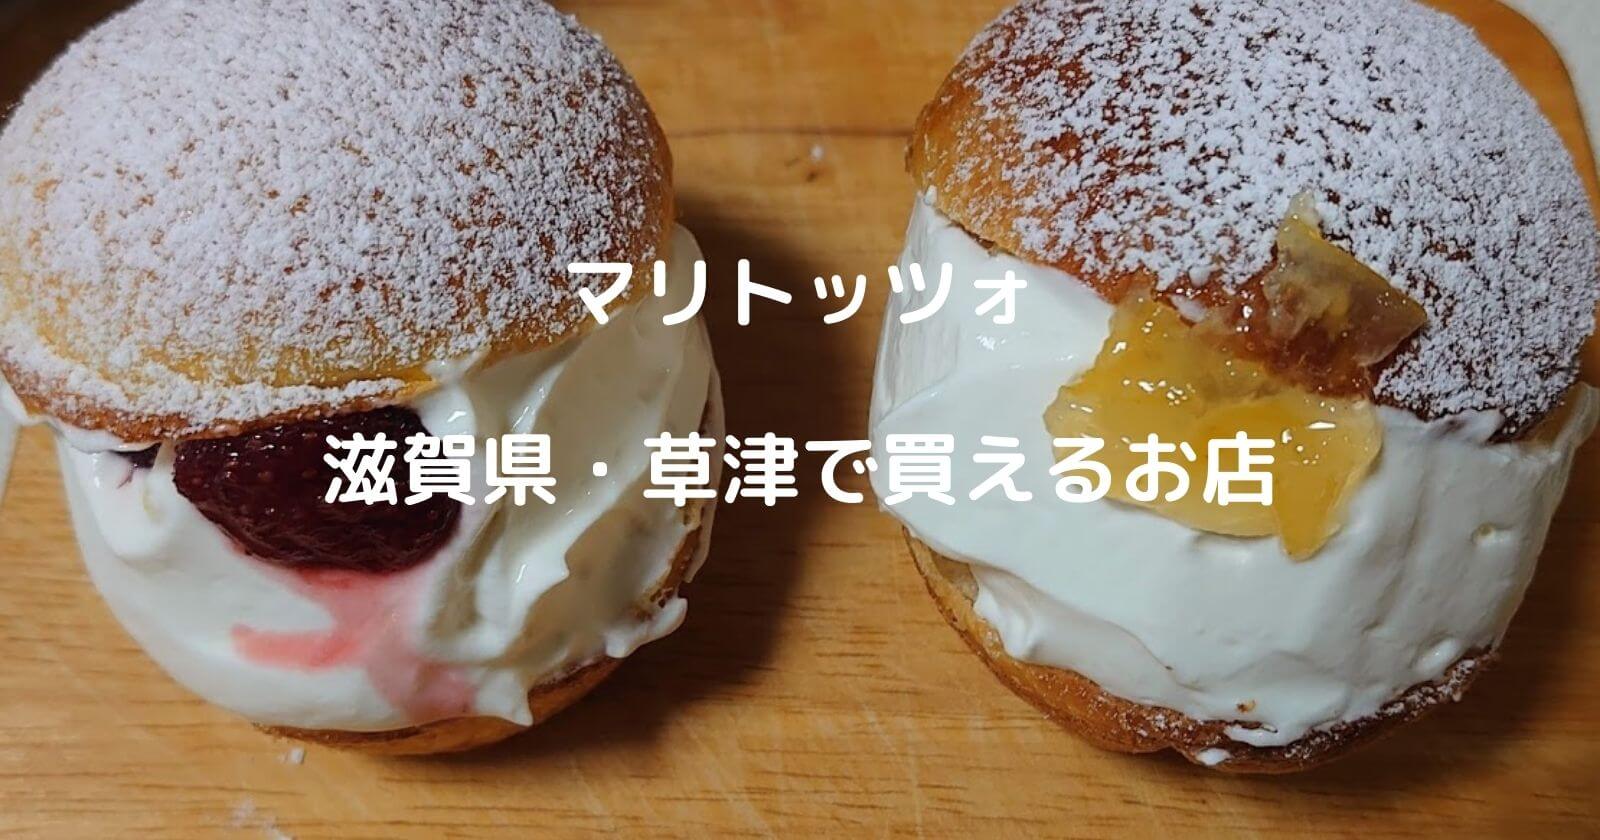 マリトッツォ 滋賀県 草津で買えるお店 人気のパン屋などをご紹介